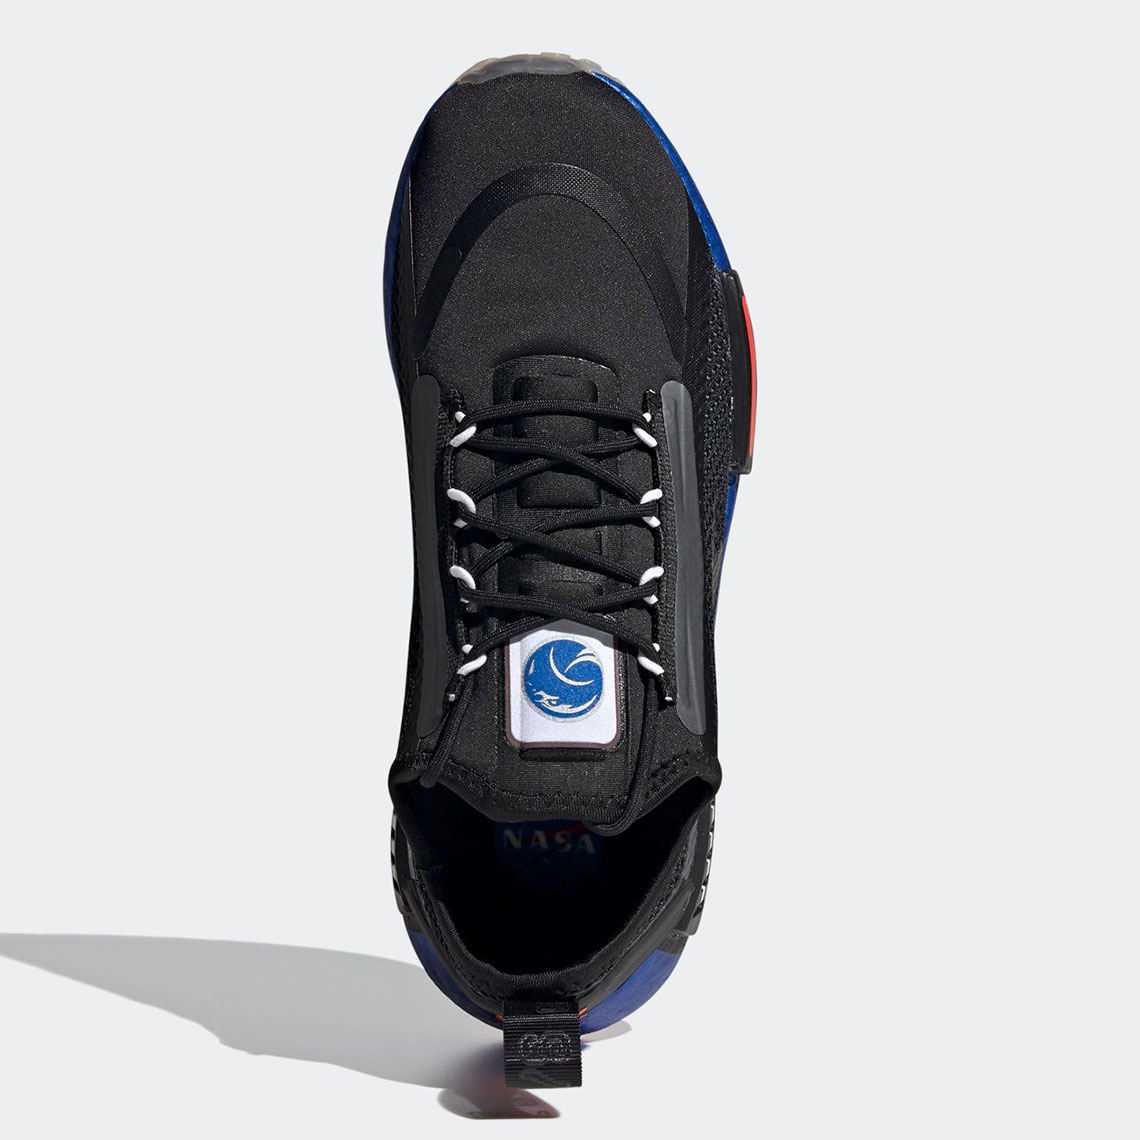 NASA adidas NMD R1 SPECTOO FX6818 FX6819 | SneakerNews.com